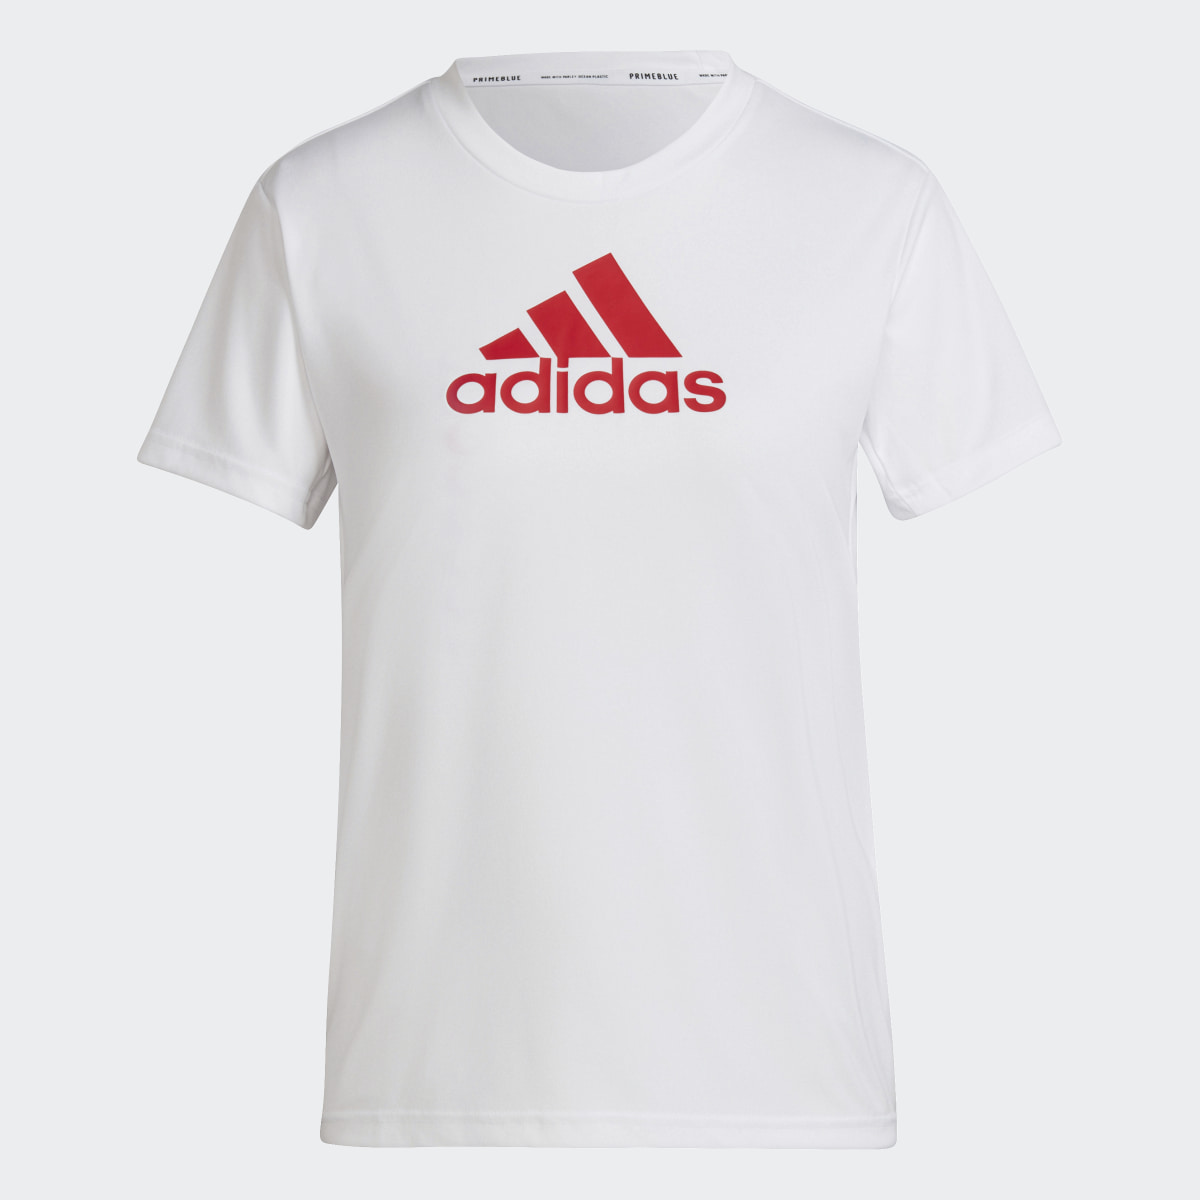 Adidas Primeblue Designed 2 Move Logo Sport T-Shirt. 5